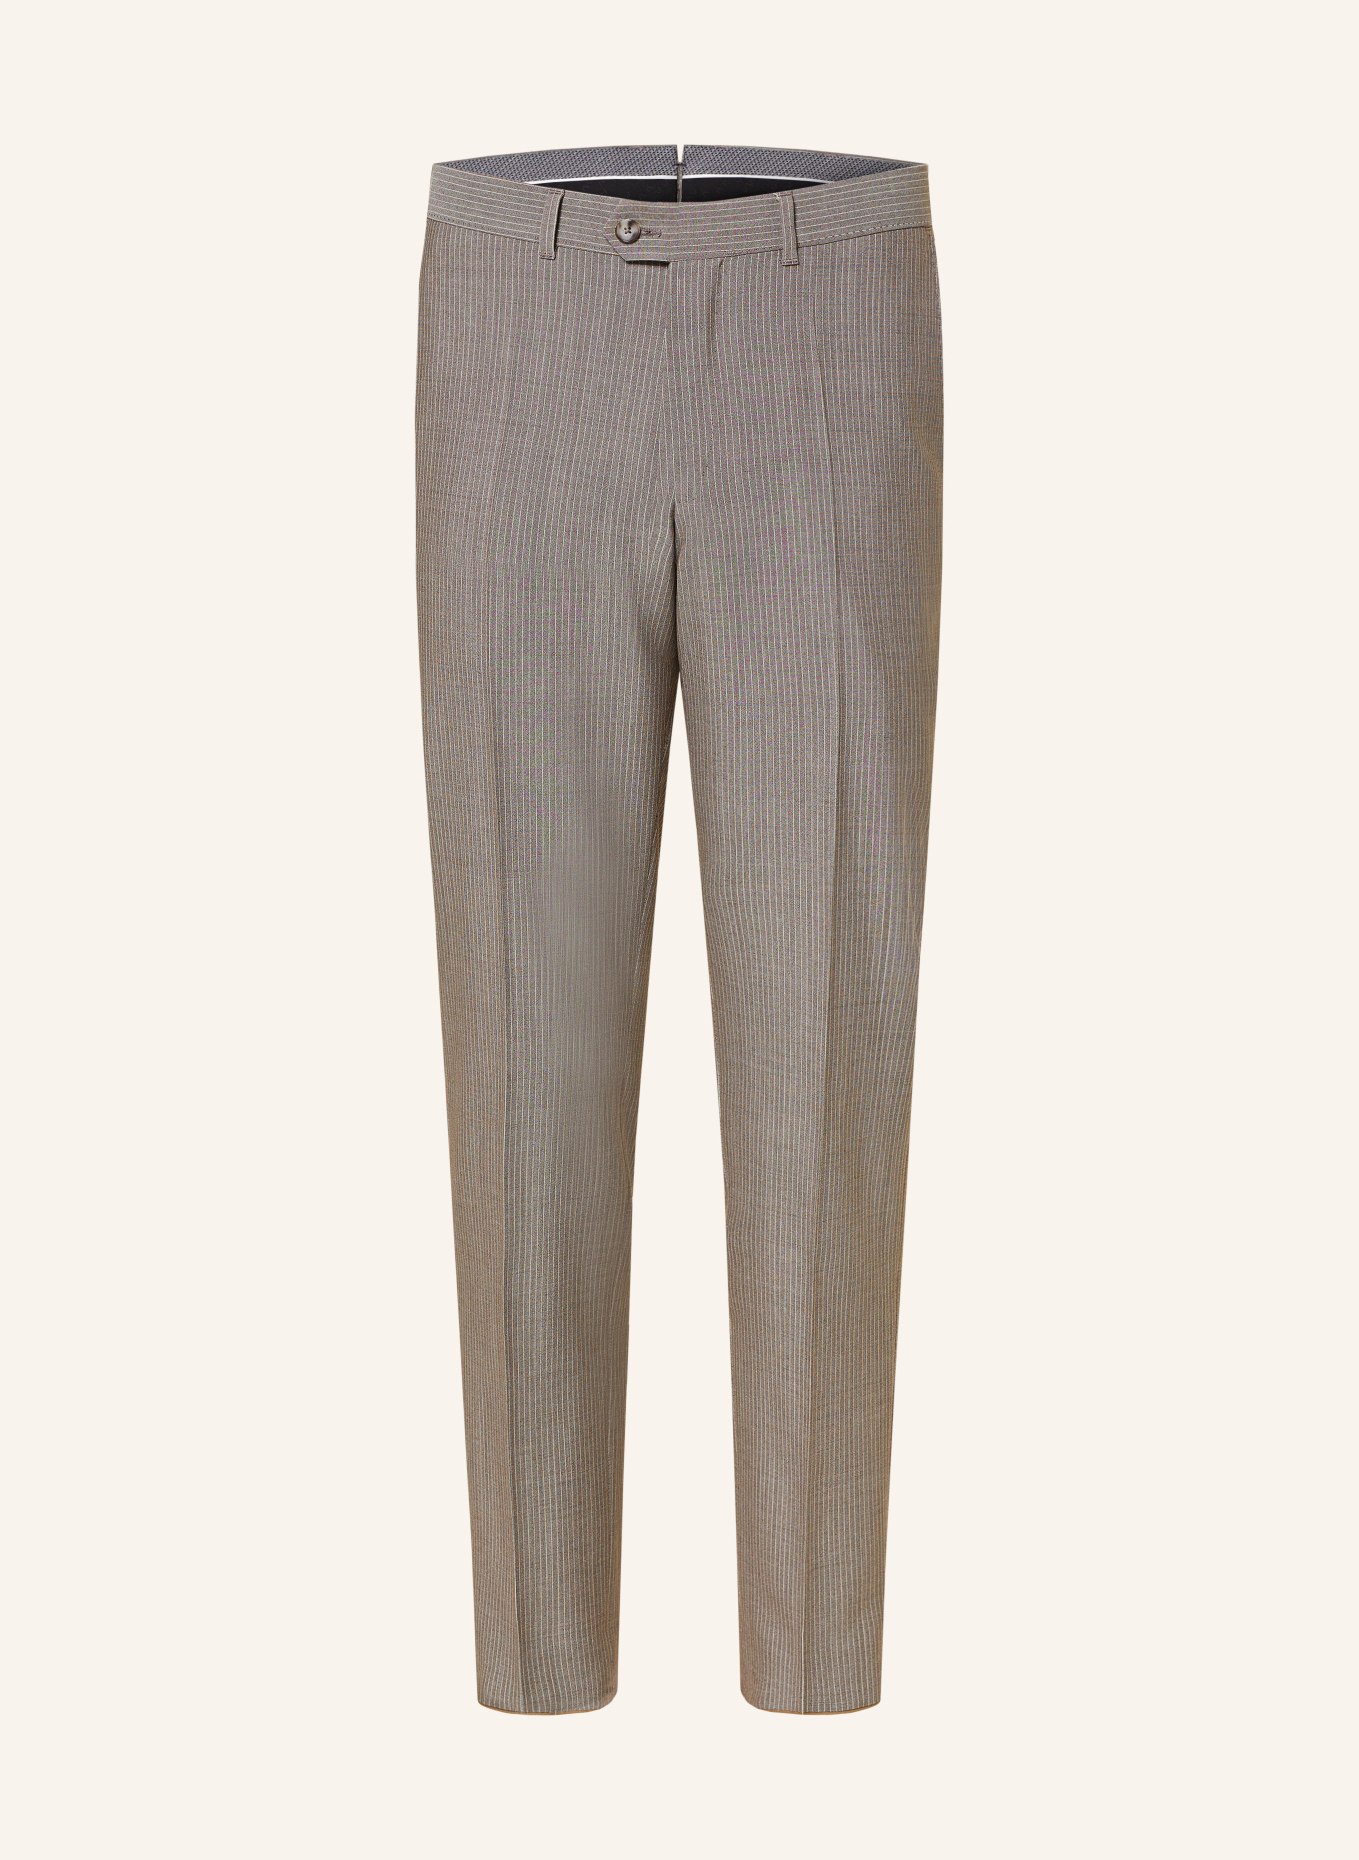 EDUARD DRESSLER Suit trousers slim fit, Color: 074 BEIGE (Image 1)